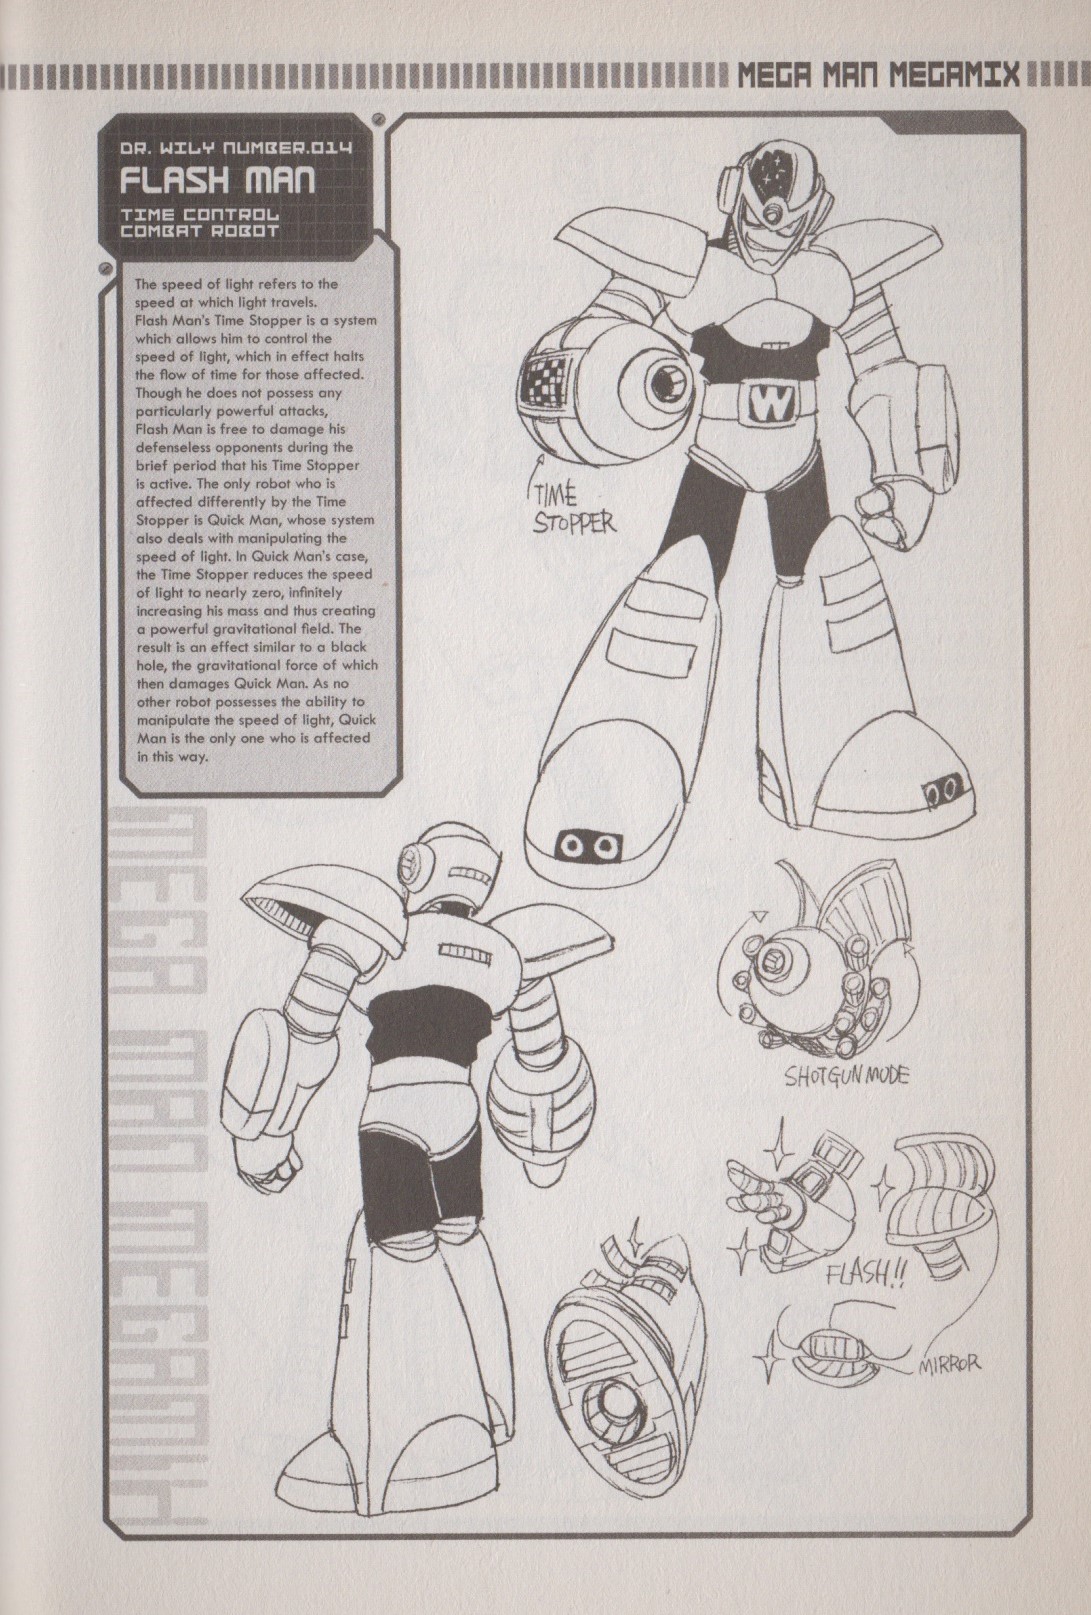 Rockman Megamix Vol. 1 Ch. 3.1 Character Profiles + Creator Interview